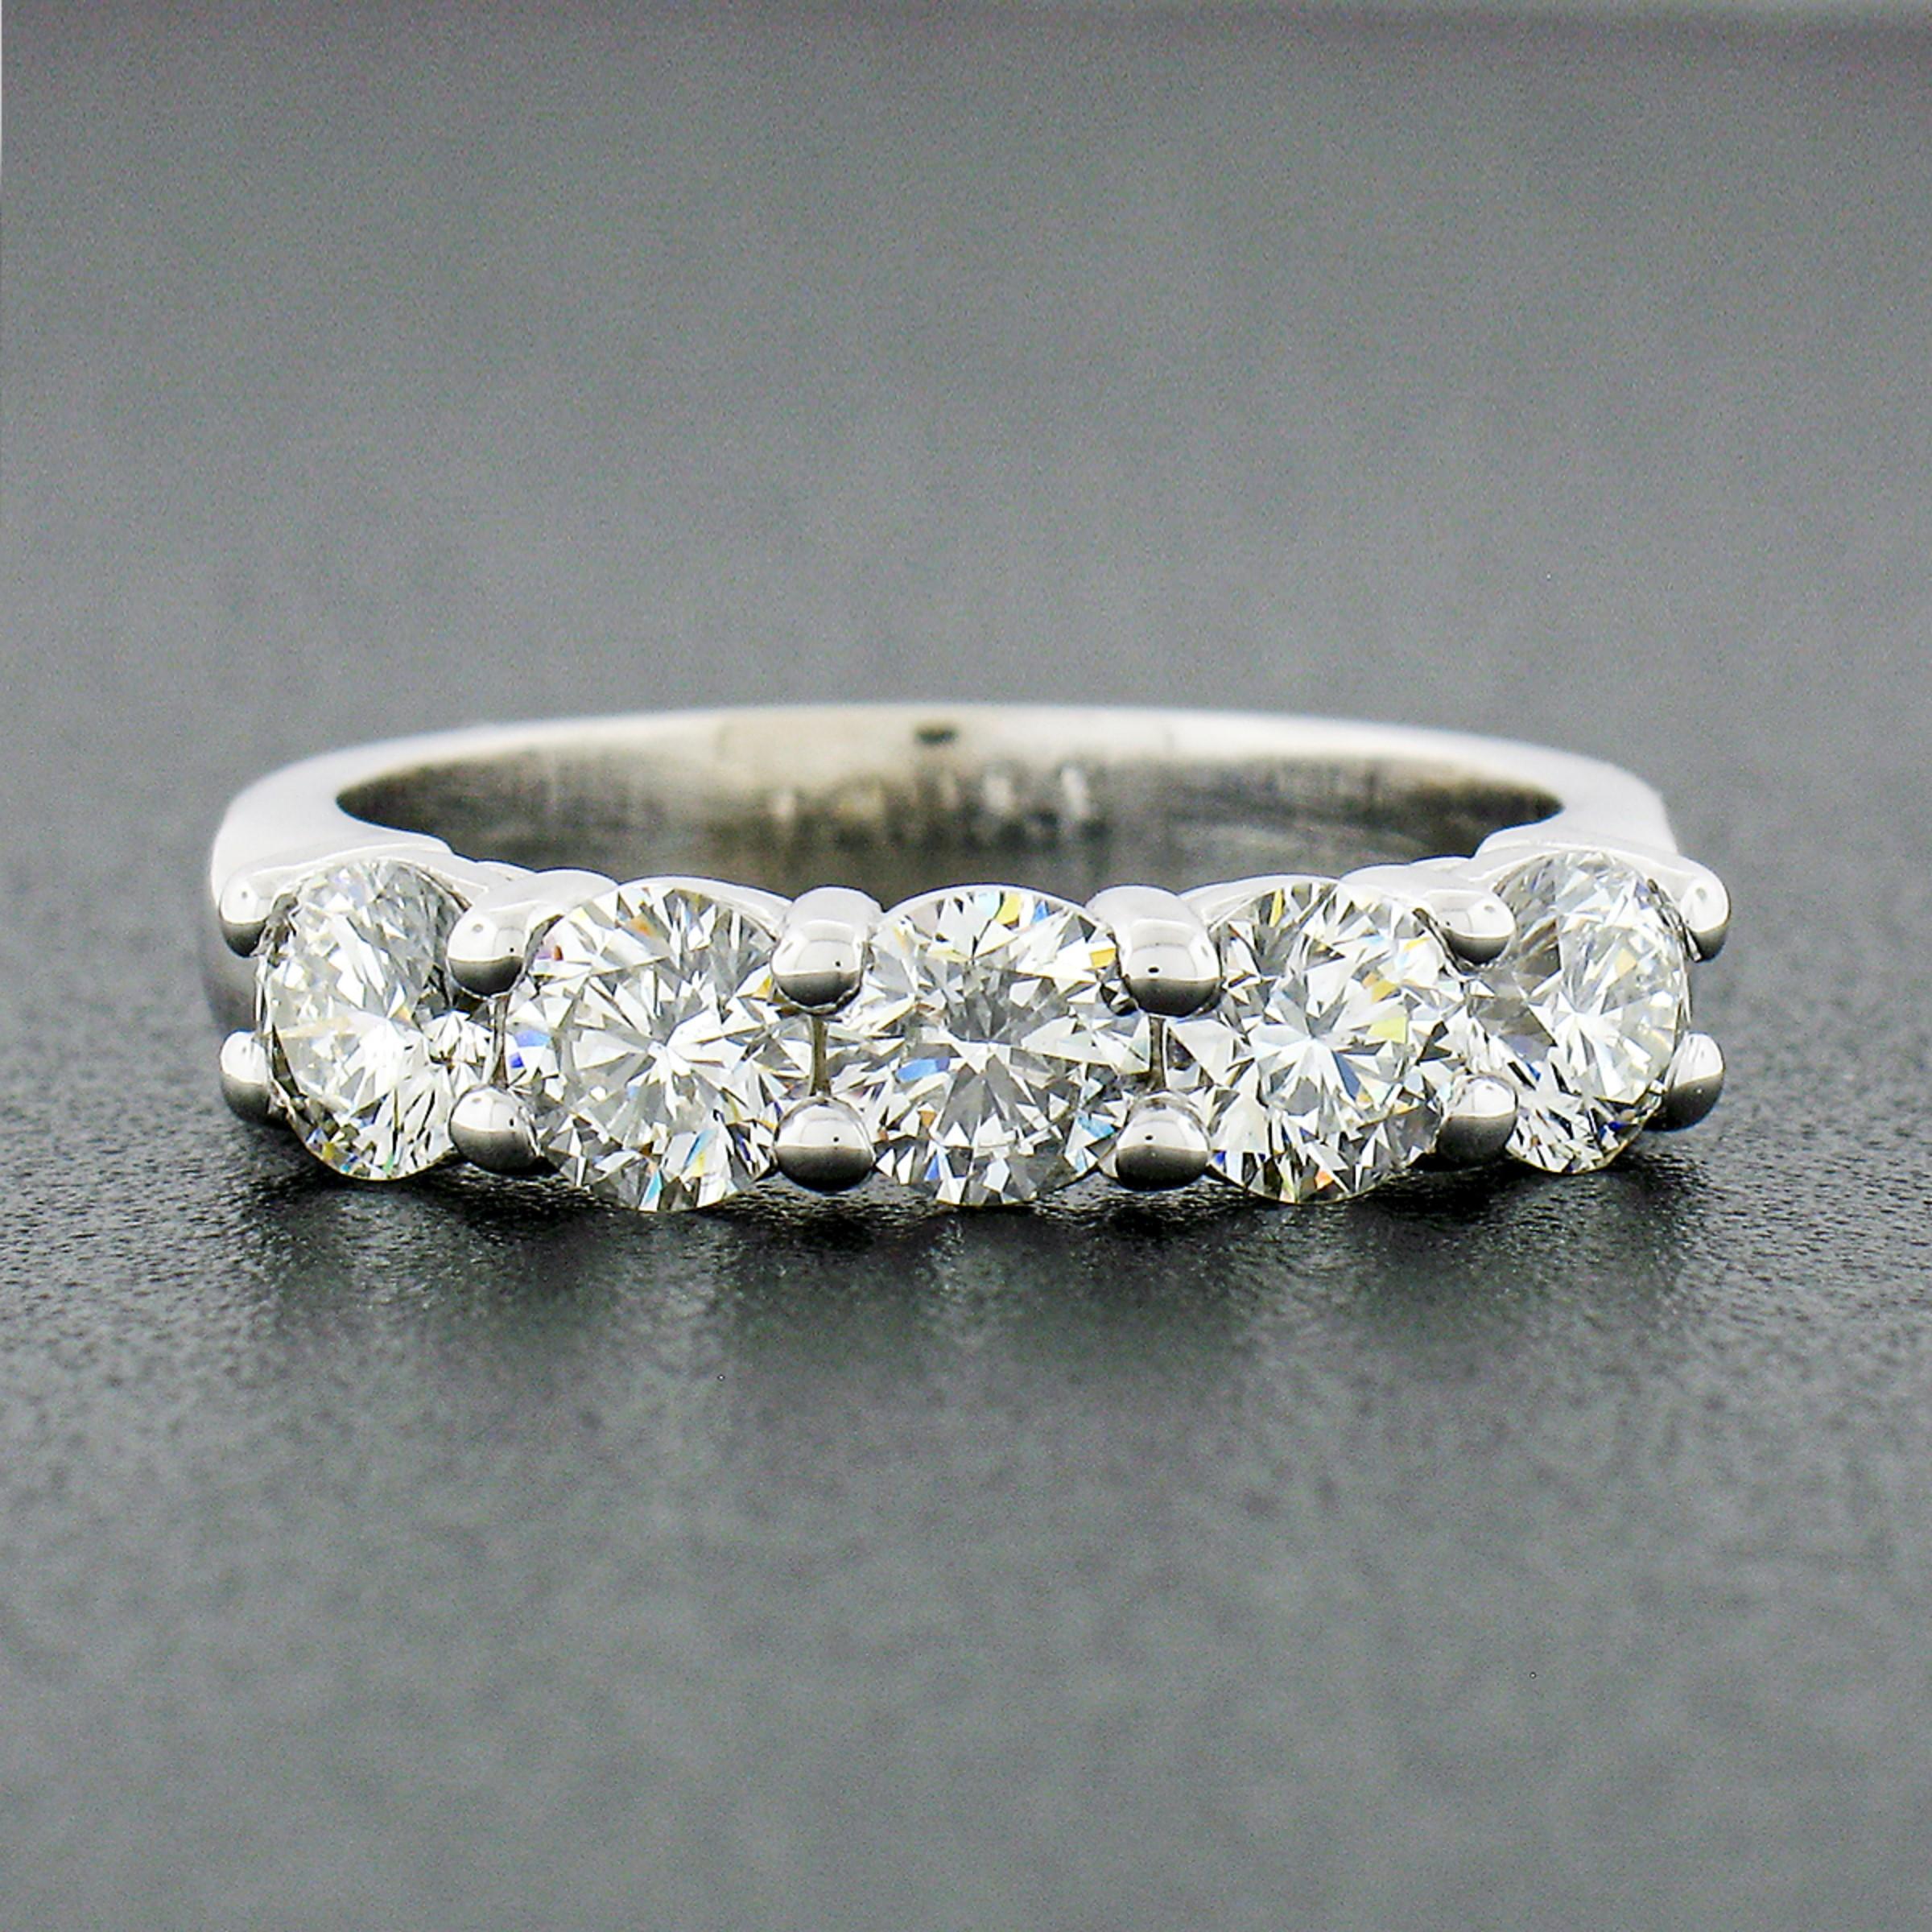 Cette magnifique bague à diamants a été fabriquée à partir d'or blanc massif de 14 carats et comporte 5 diamants ronds de taille brillante soigneusement sertis en épingle à cheveux sur sa partie supérieure. Chaque diamant présente une belle taille,